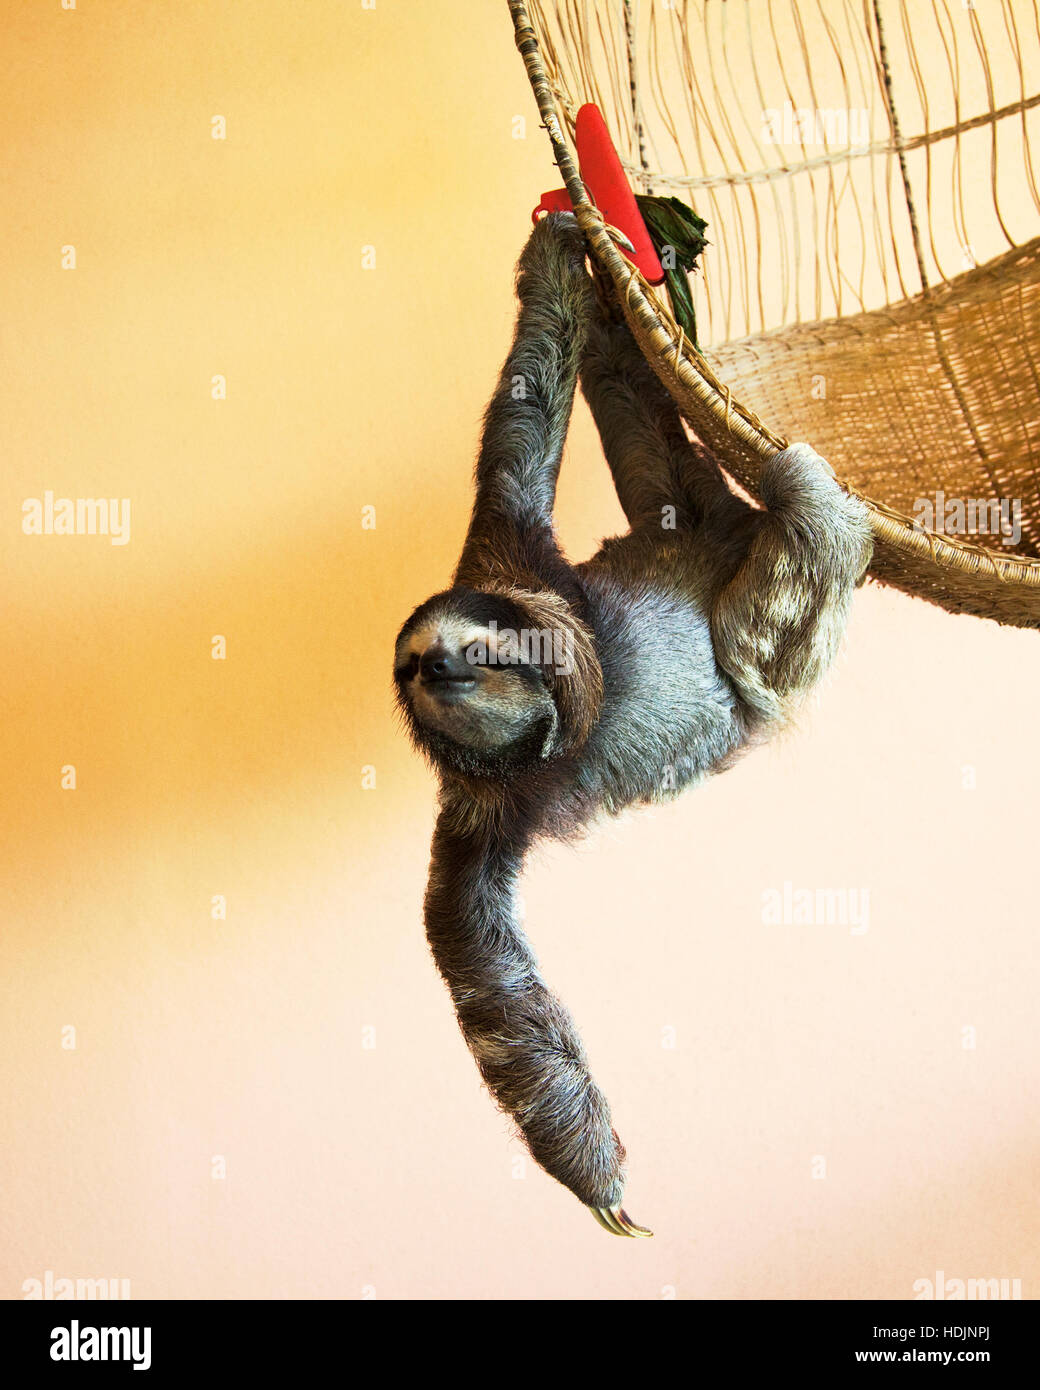 Sloth salvato a tre punte (Bradypus variegatus) appeso a un cestino presso il Santuario della Sloth di Costa Rica Foto Stock